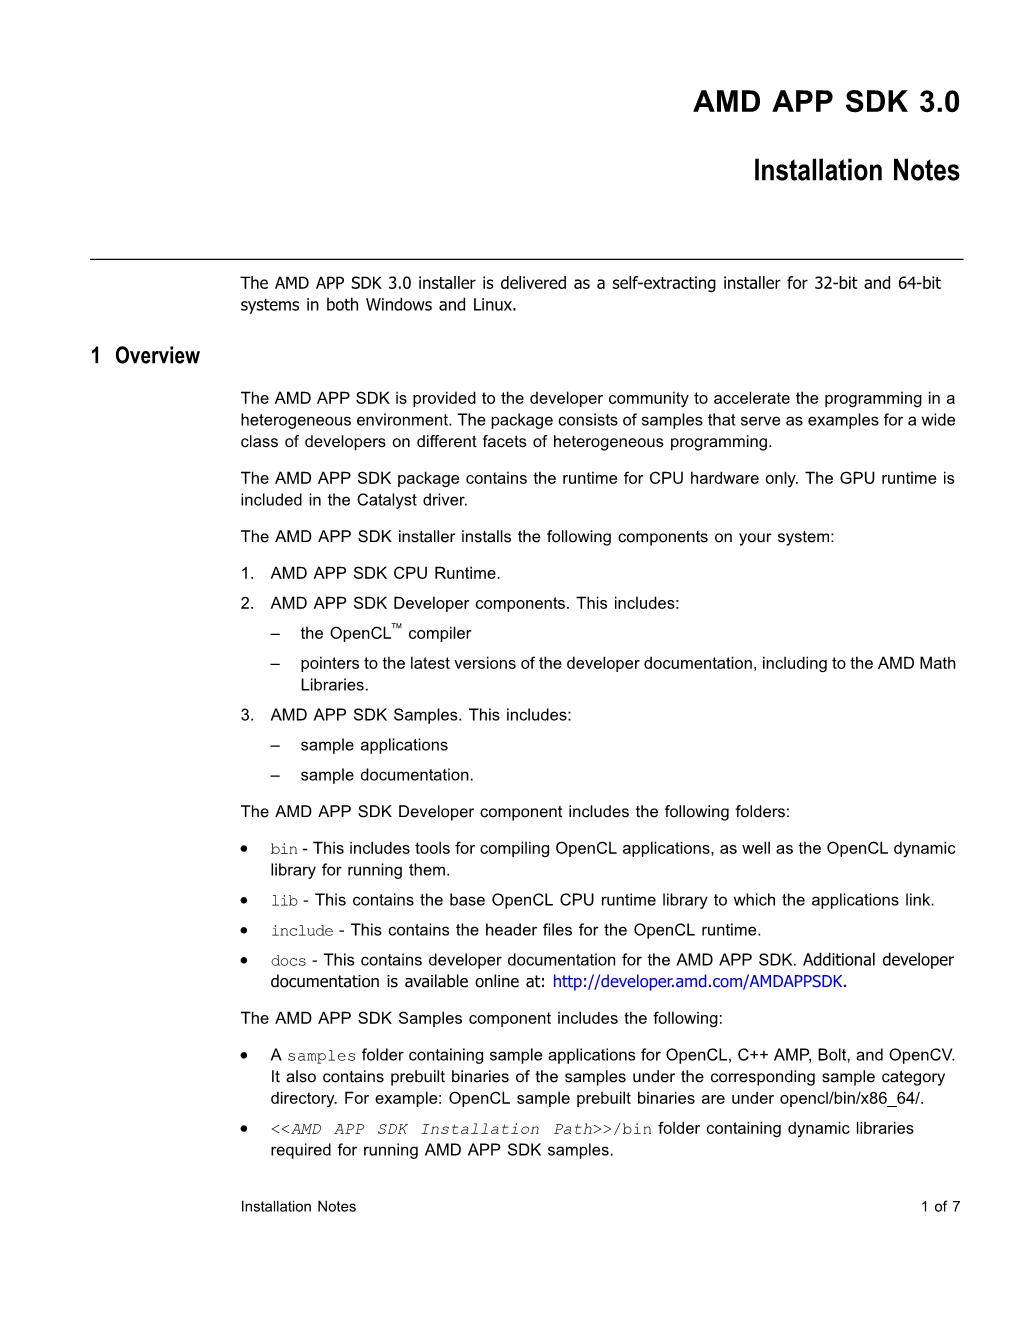 AMD APP SDK 3.0 Installation Notes